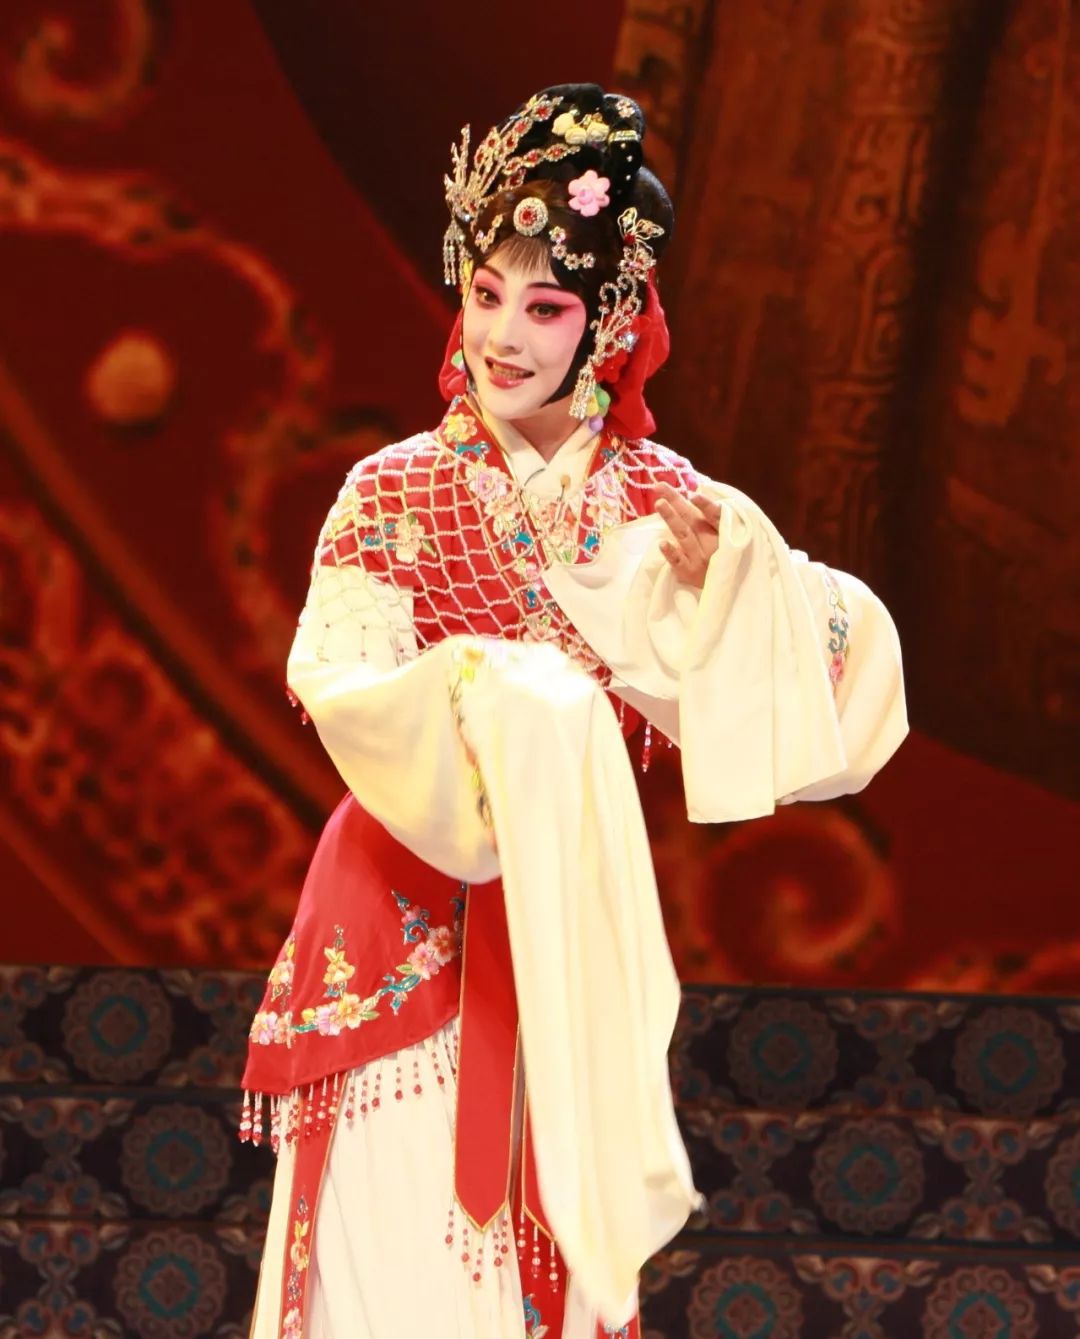 李文文《琴心》出身于梨园世家,现为上海京剧院优秀青年演员,工花旦